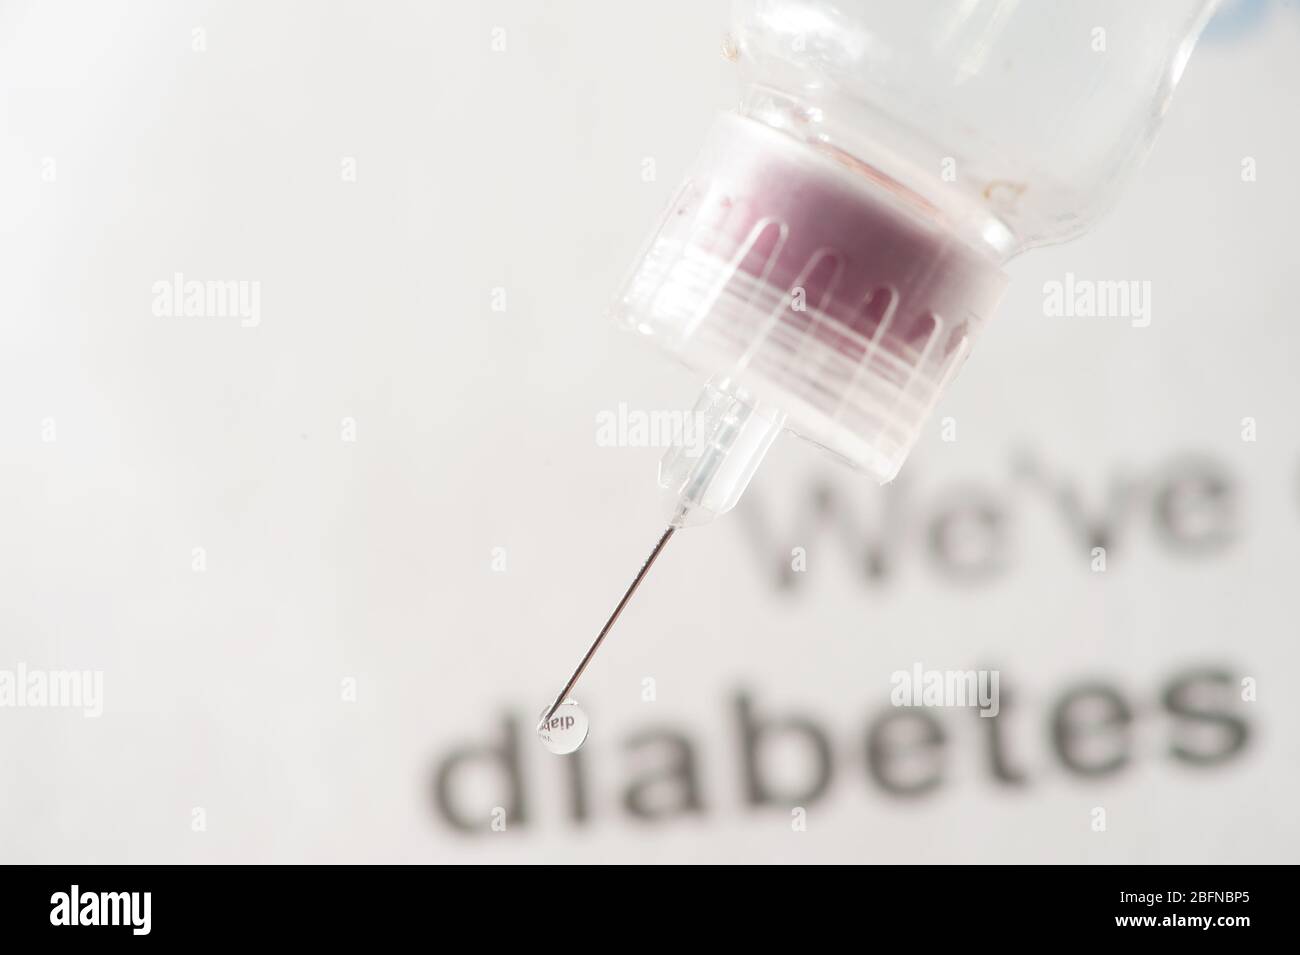 injection d'insuline à clé élevée, détail de la goutte d'insuline à l'extrémité de l'aiguille de la seringue Banque D'Images